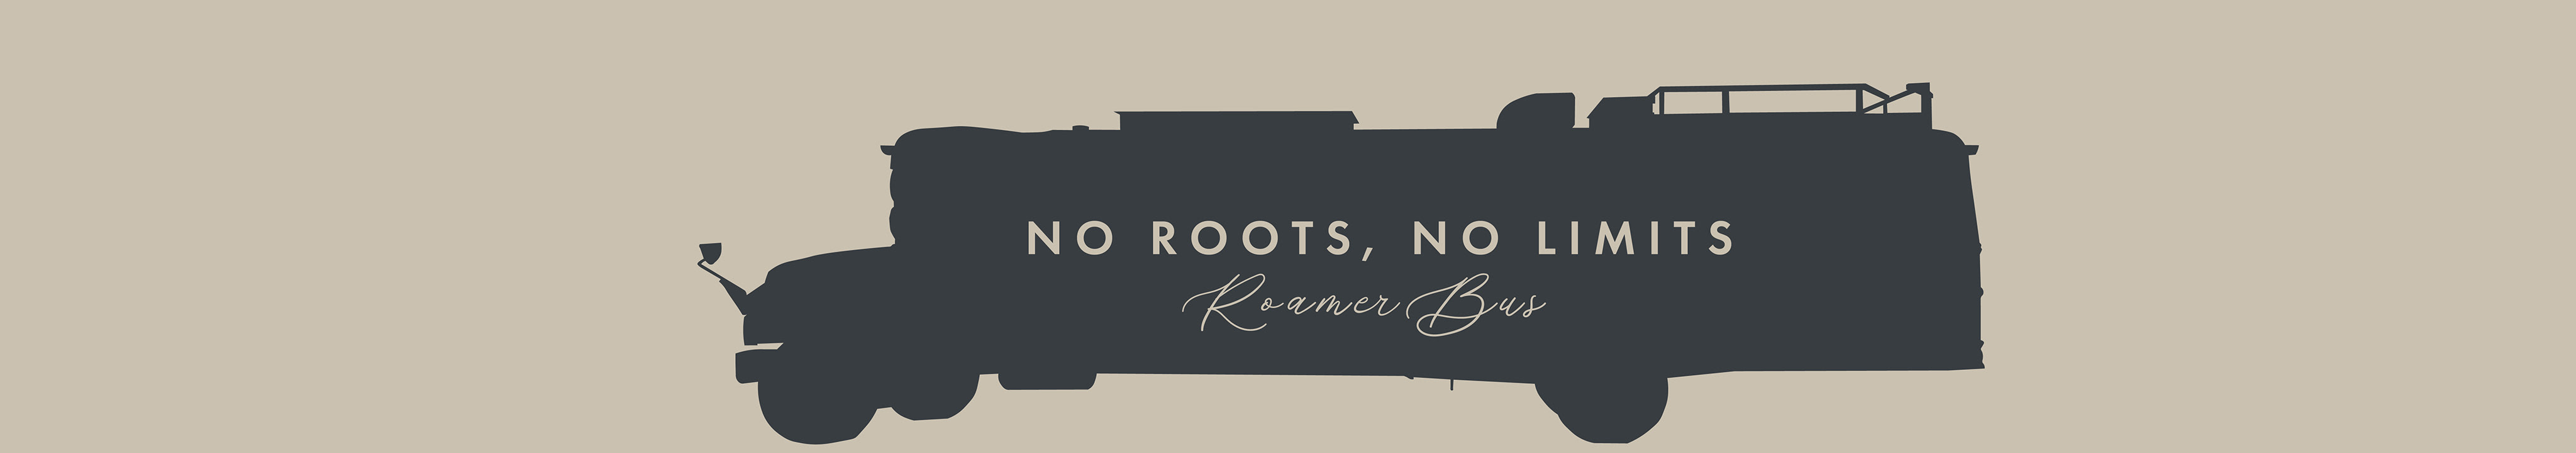 no roots, no limits